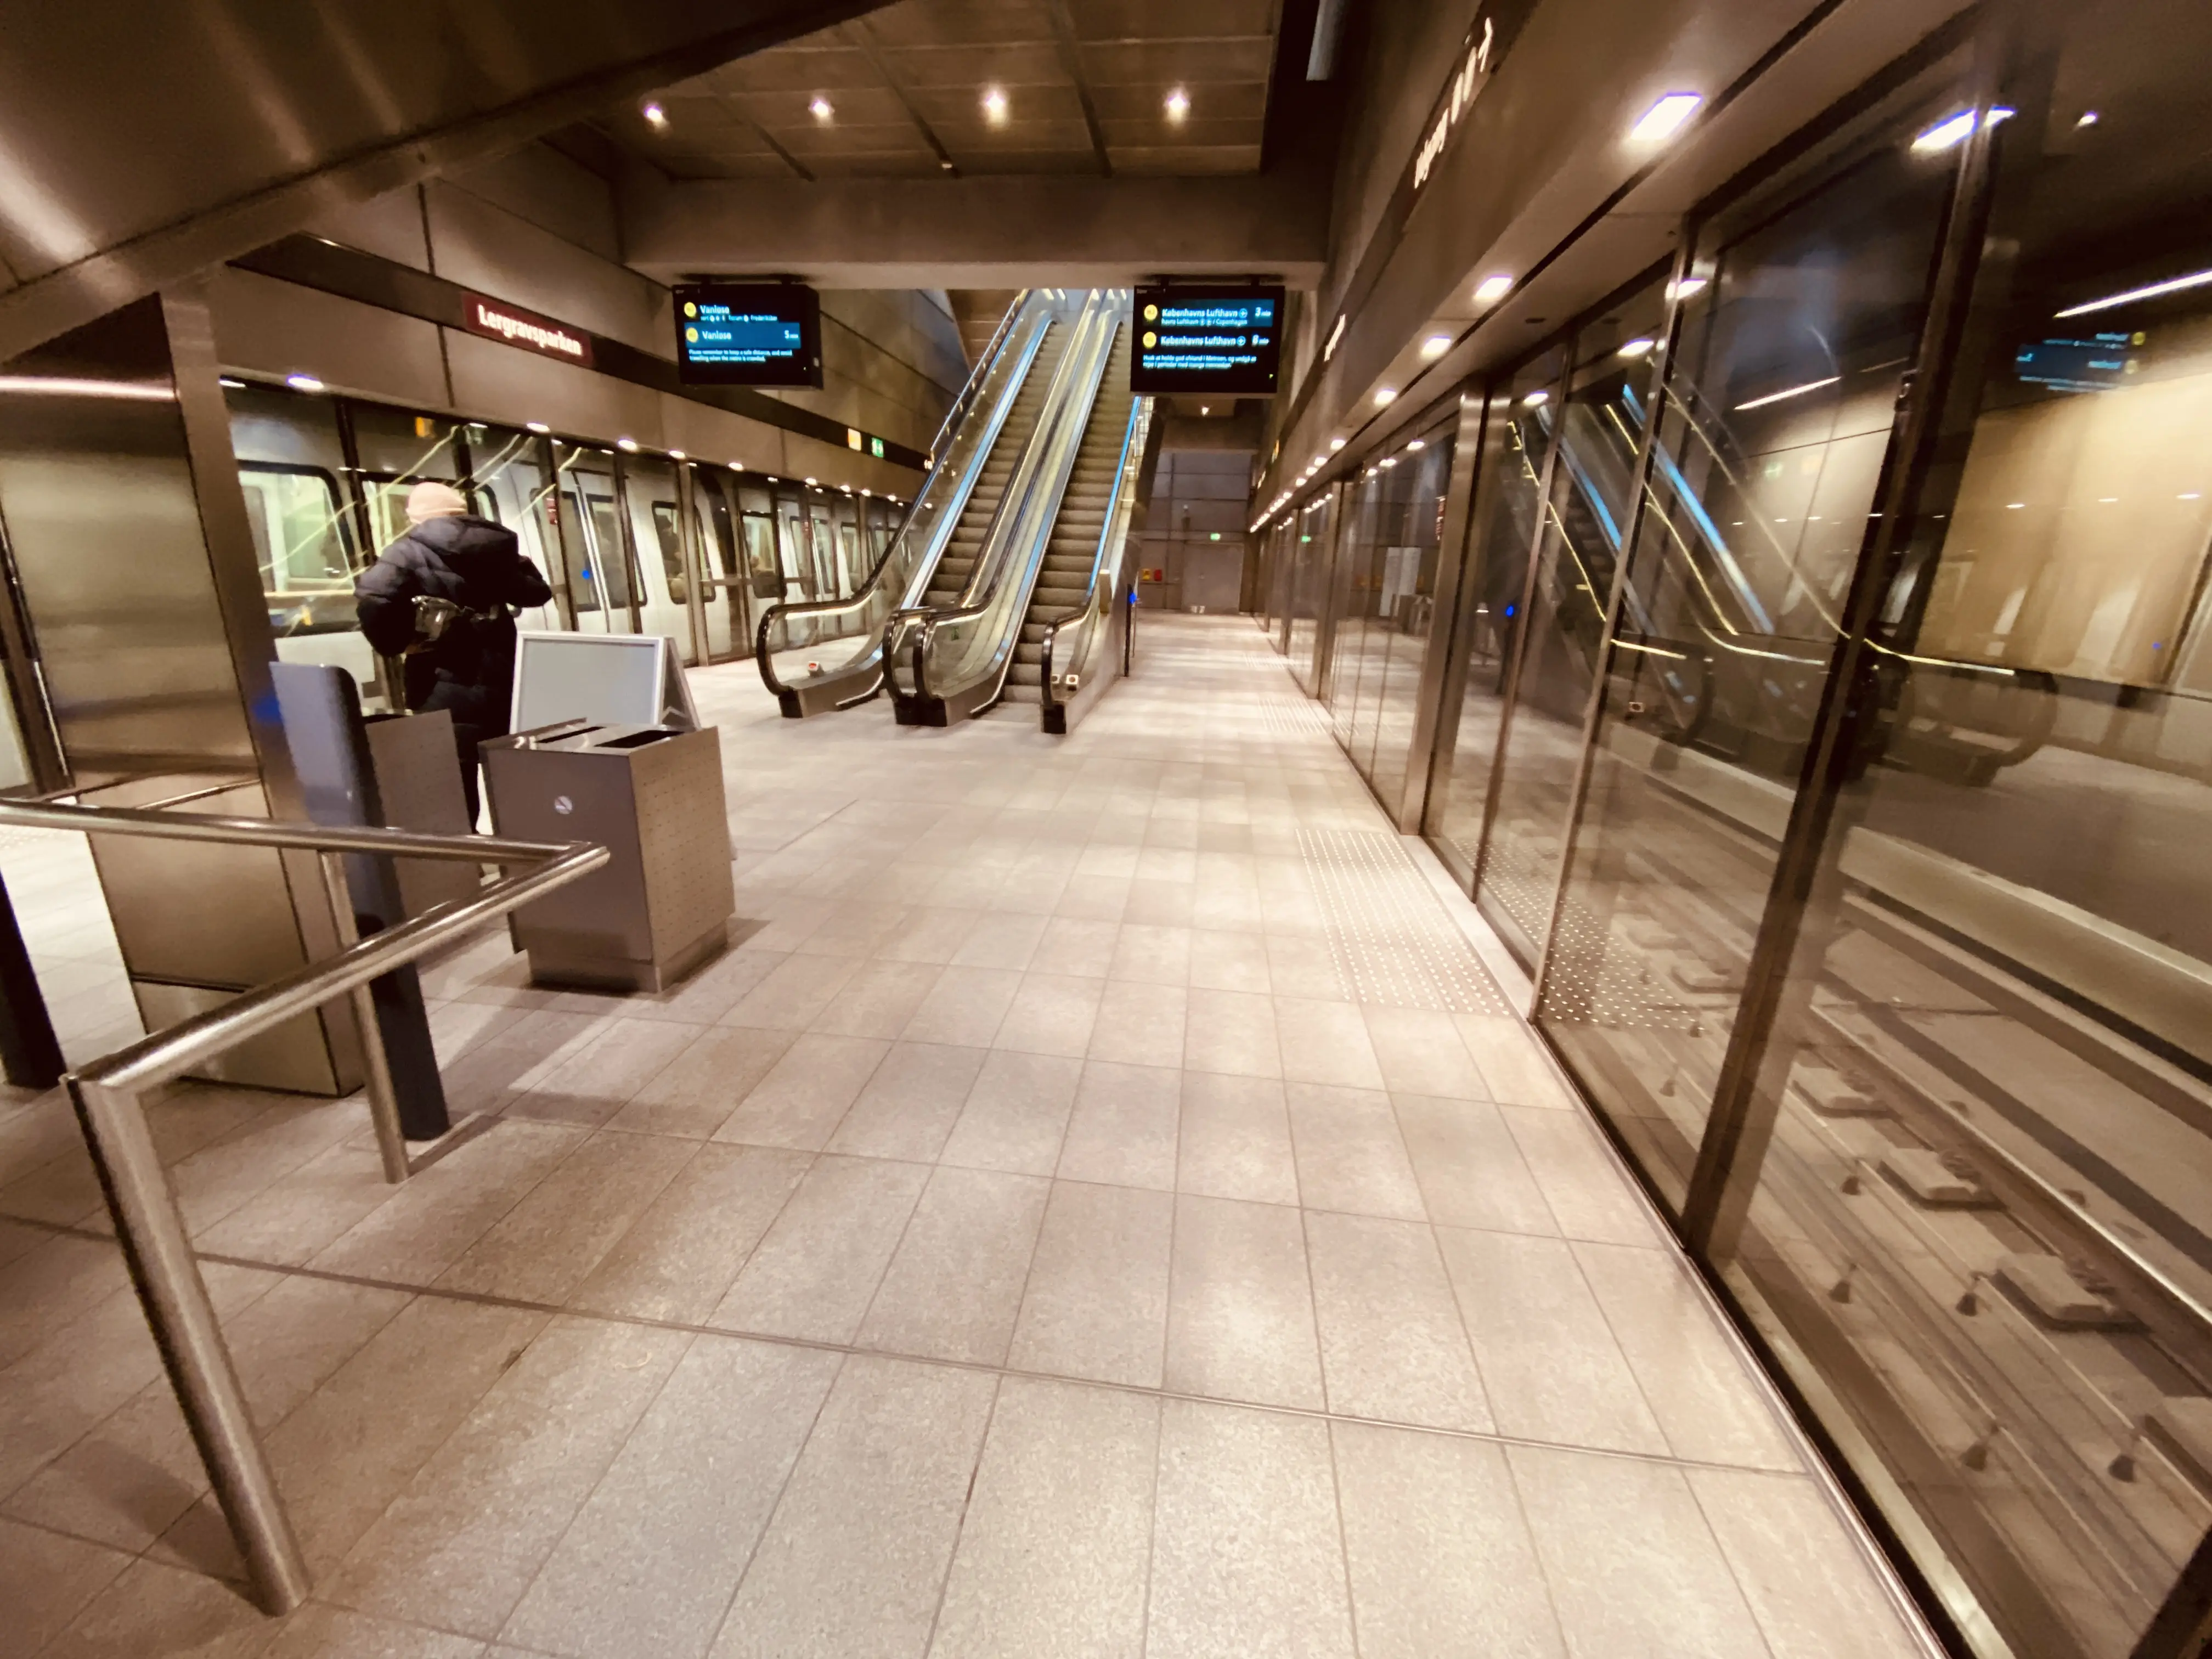 Billede af Lergravsparken Metrostation.